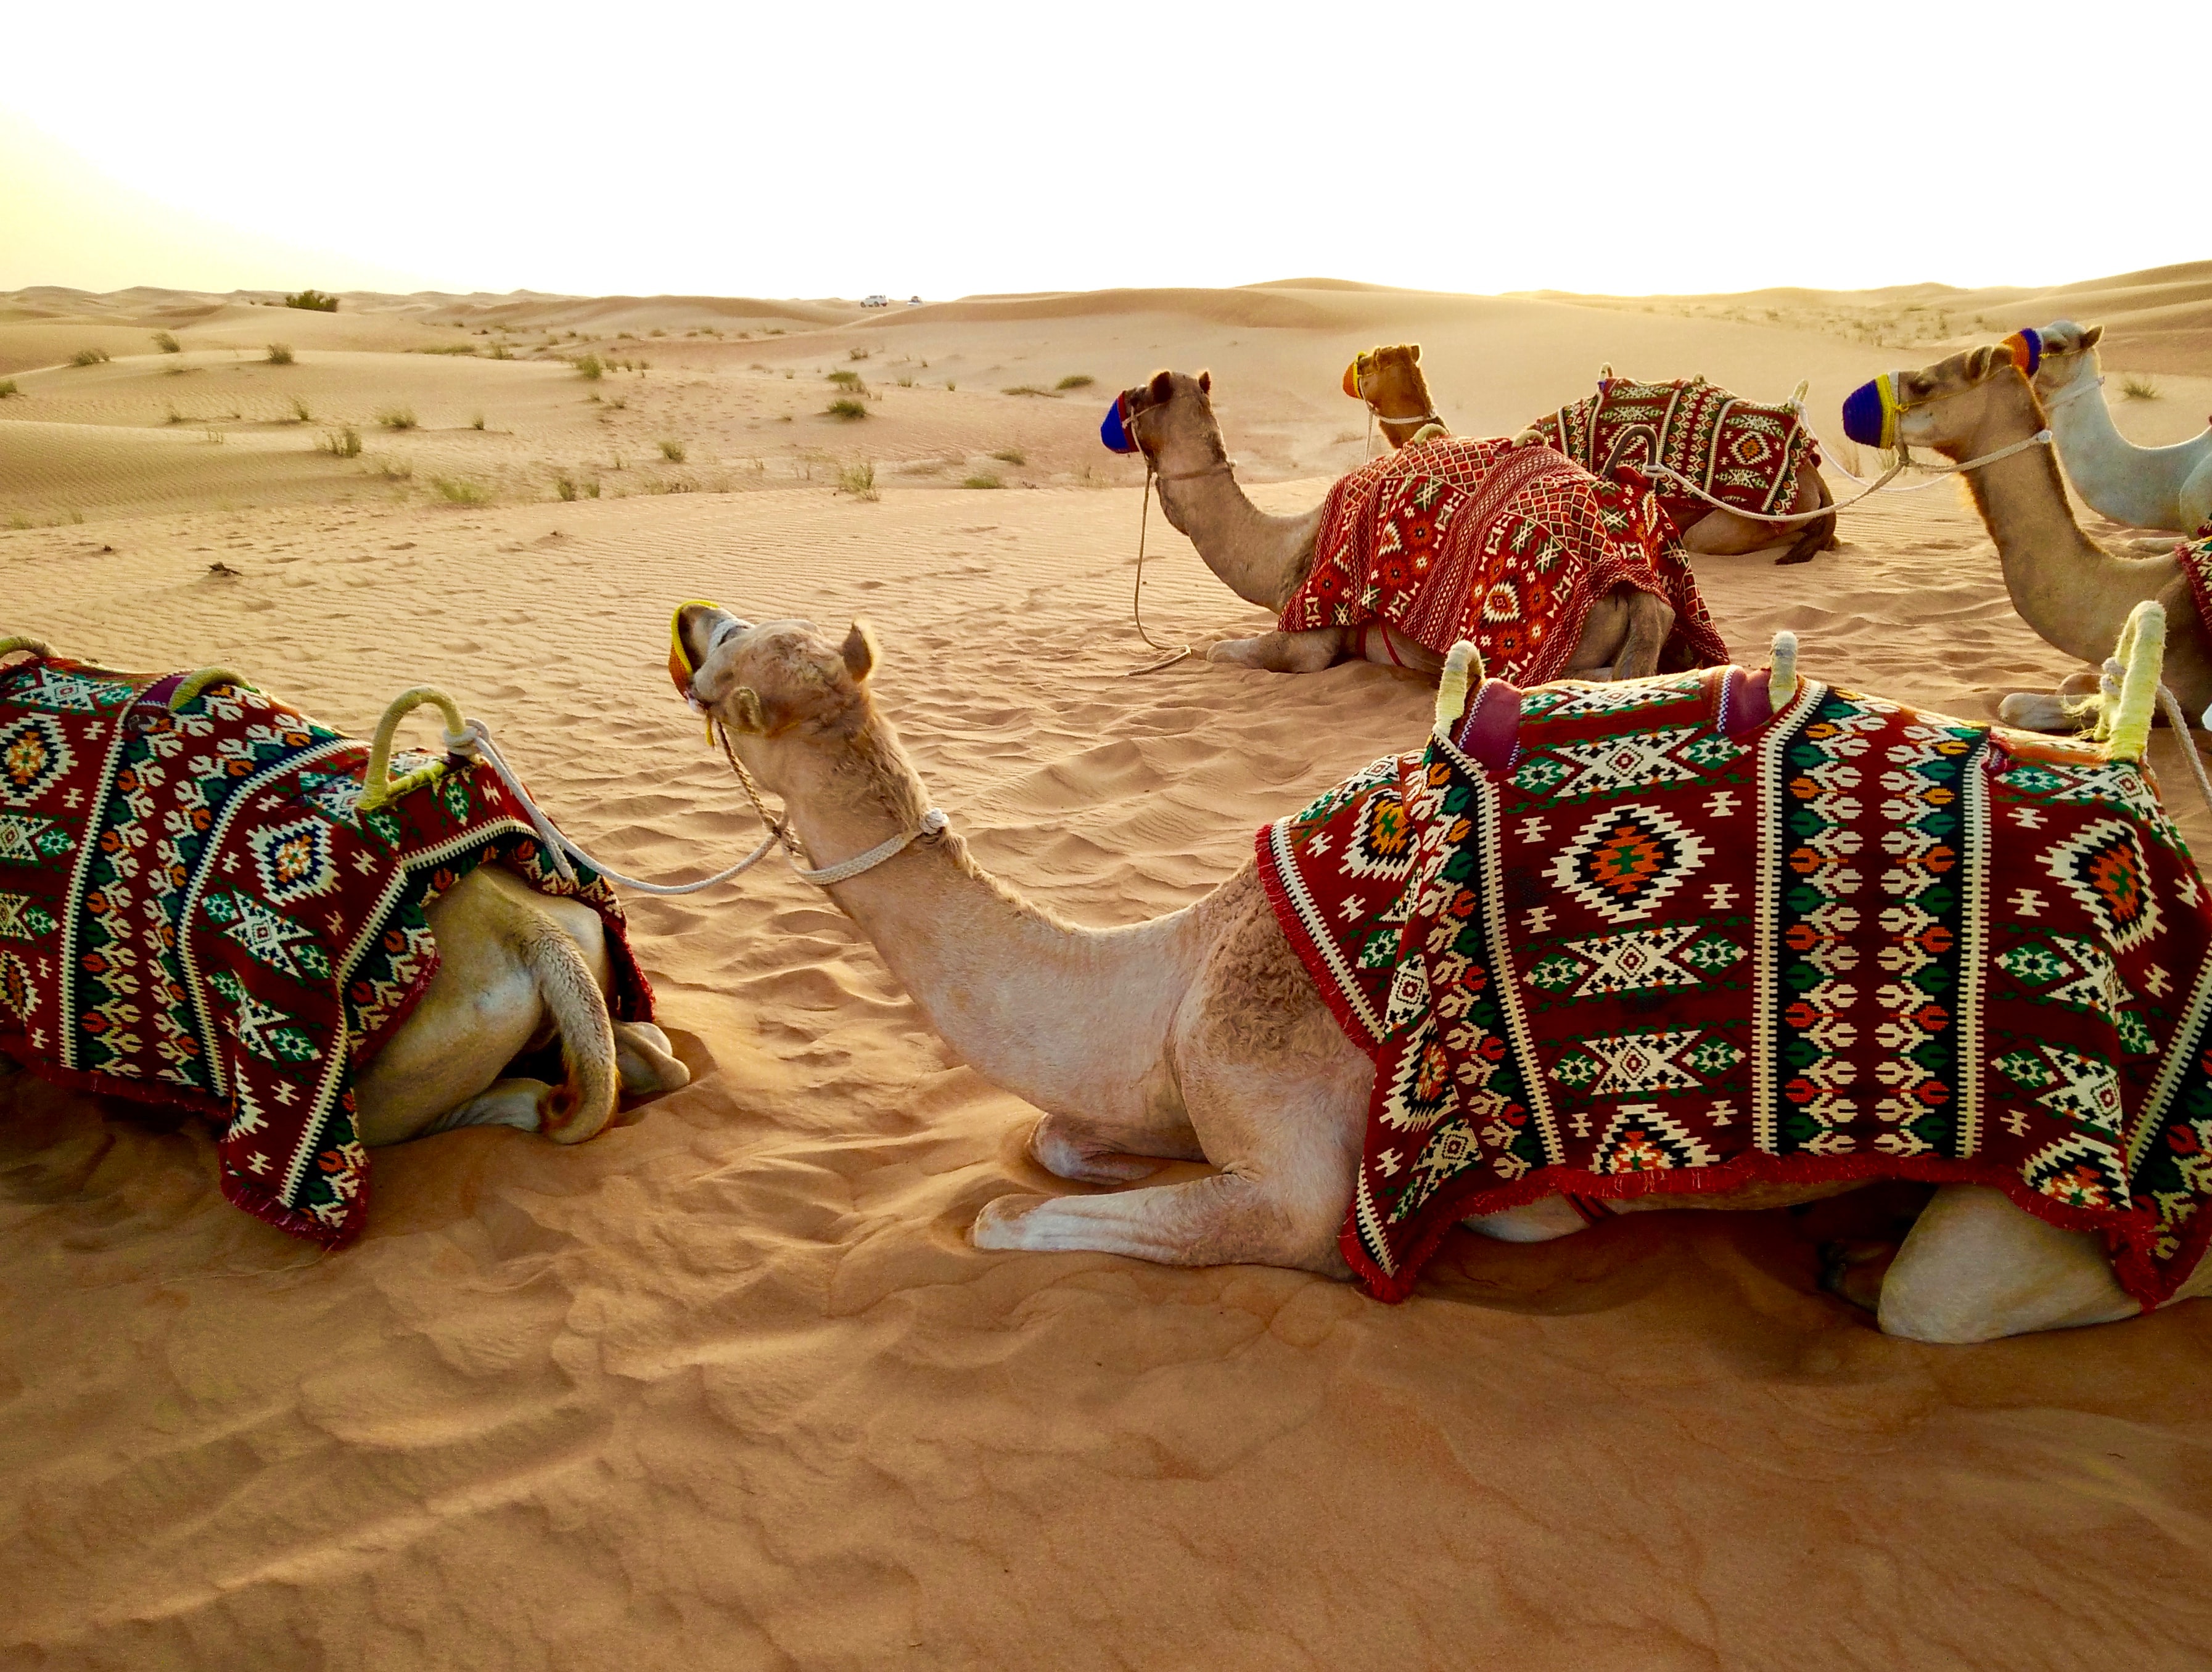 Camels at rest